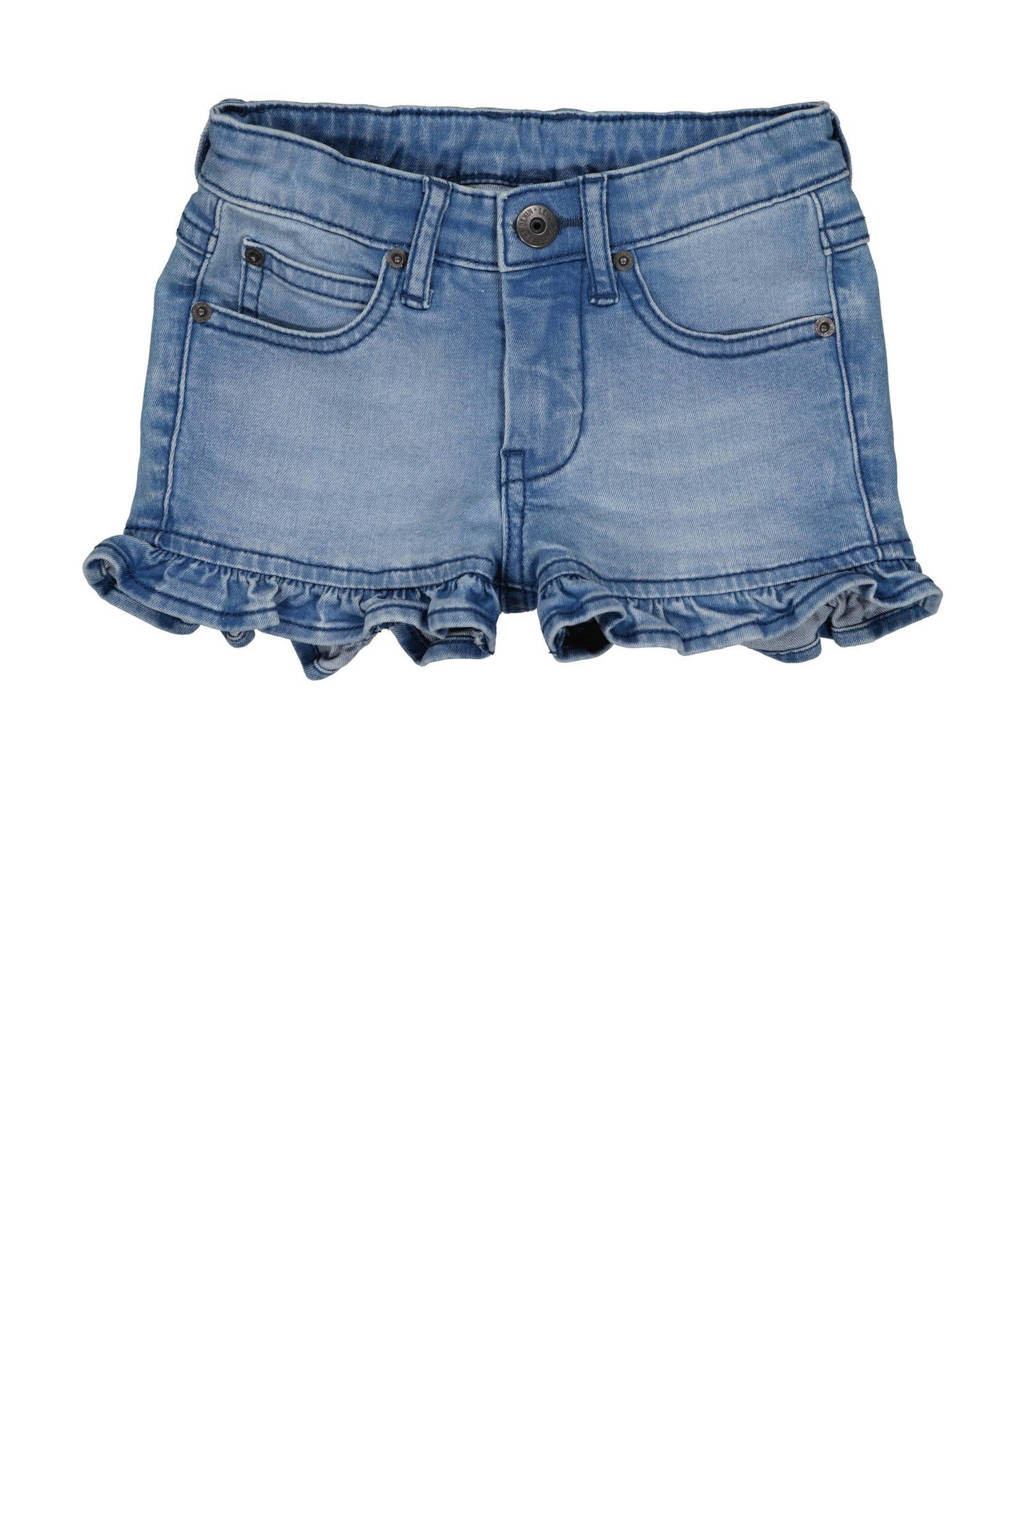 LEVV Little regular fit jeans short Vroukje blue denim